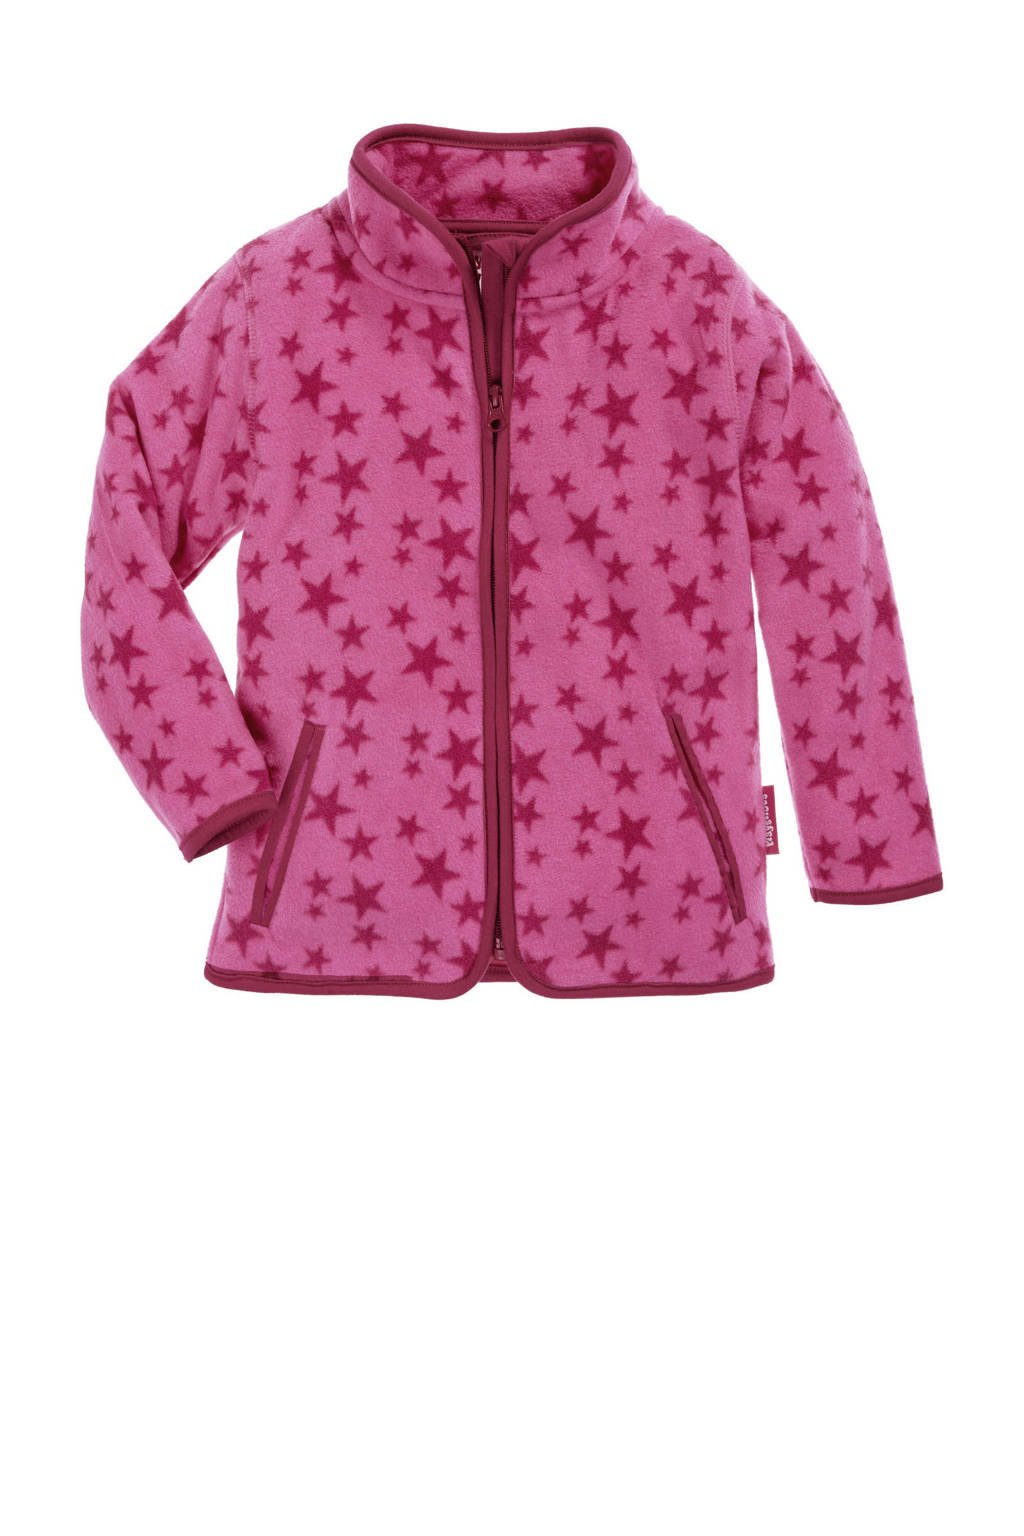 Roze en fuchsia meisjes Playshoes fleece vest Stars met sterrenprint, lange mouwen, opstaande kraag en ritssluiting